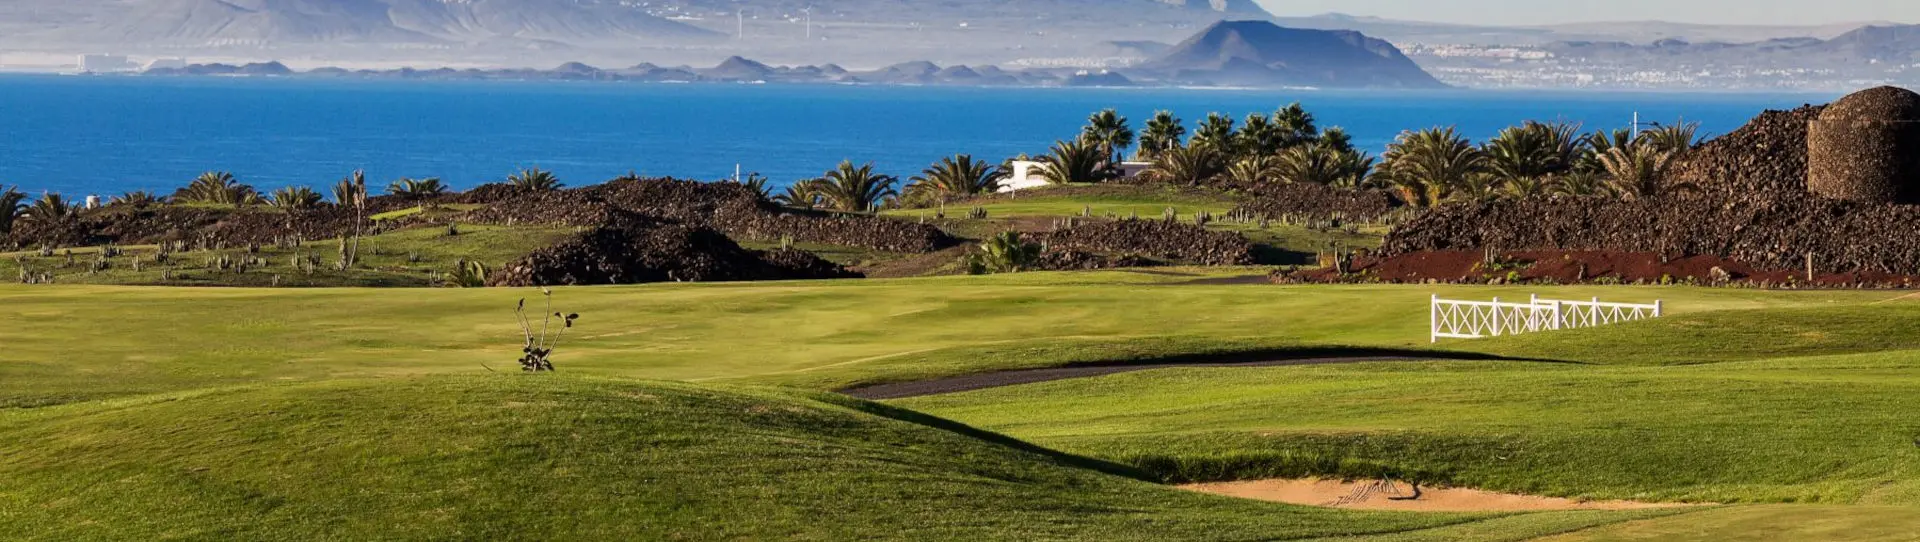 Spain golf courses - Lanzarote Golf Course - Photo 1